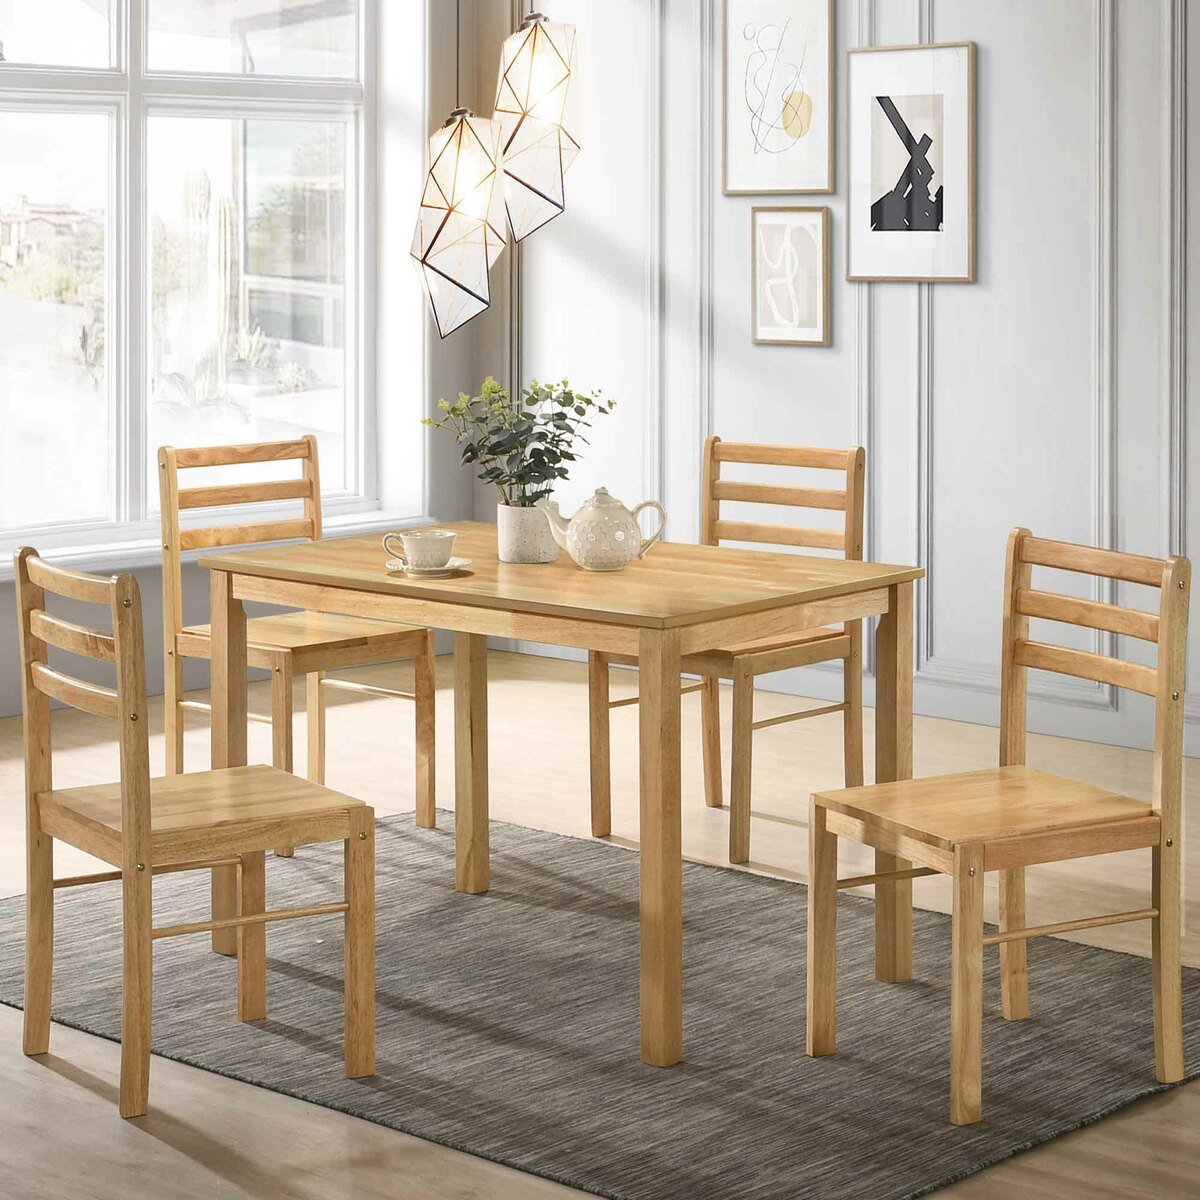 مابل ليف طاولة طعام خشبية 1 + 4 طبيعية 3D الطول 100 × العرض 700 × الإرتفاع 740 سم